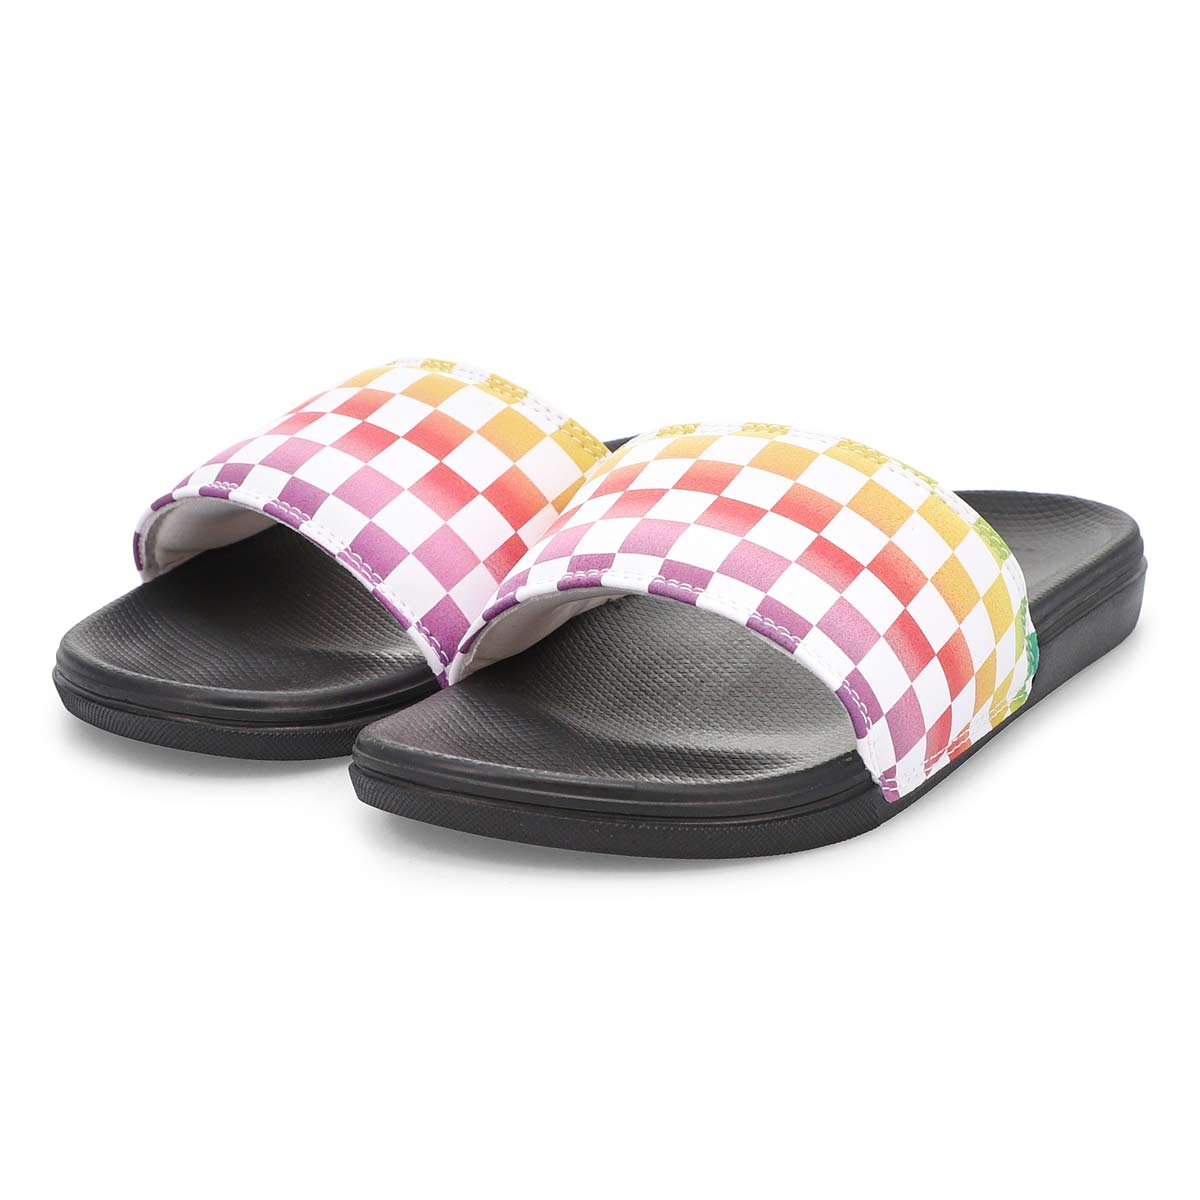 Vans Women's Range Slide-On Slide Sandals - M | SoftMoc.com